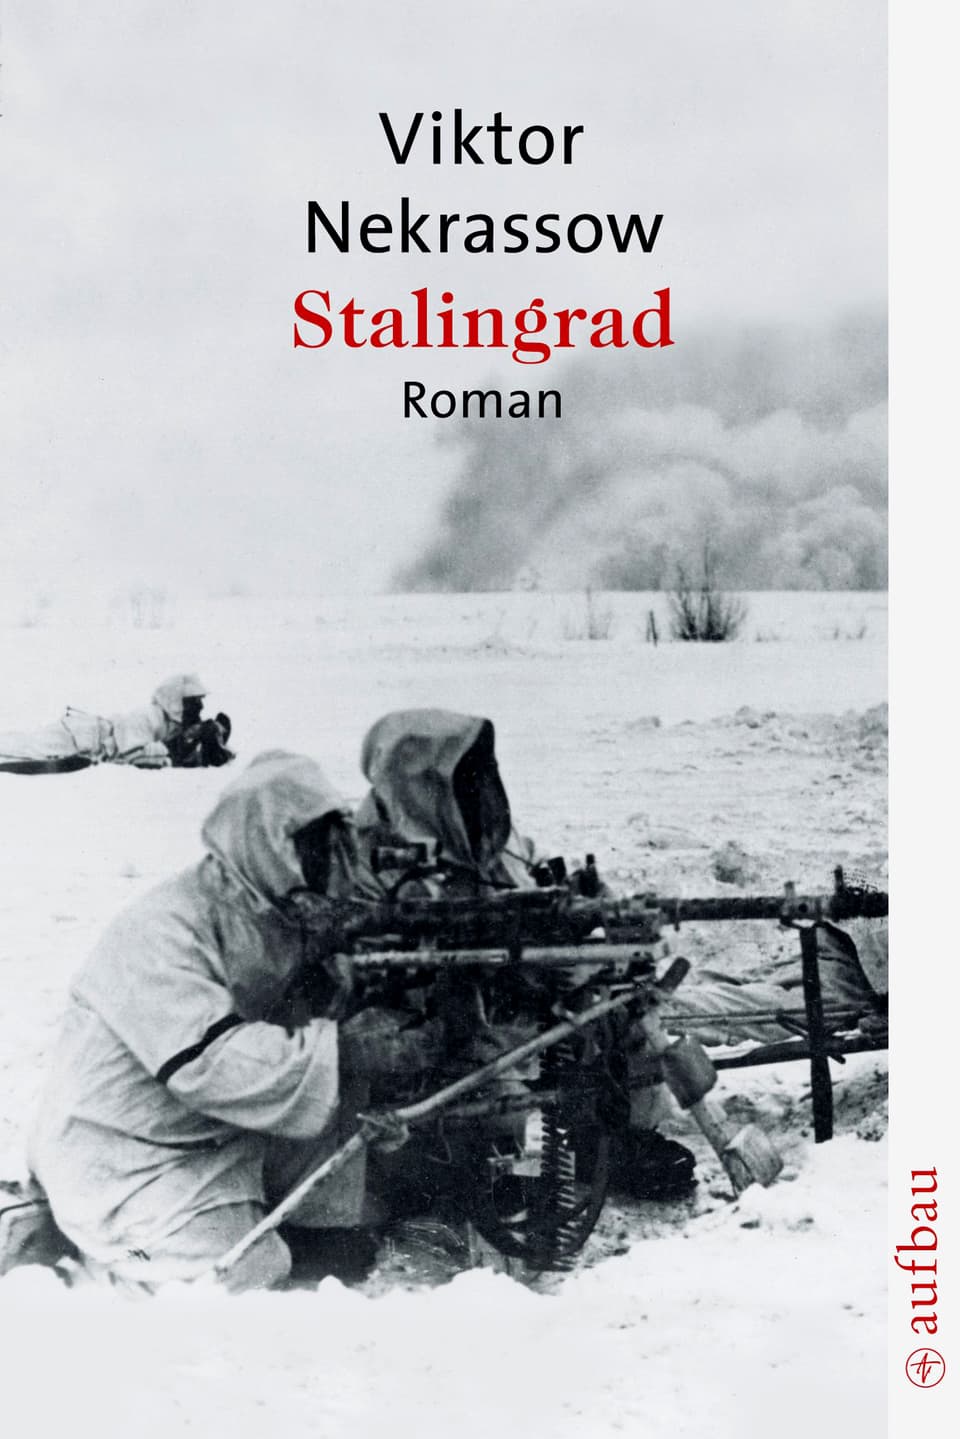 Buchcover (Ausschnitt): Zwei Soldaten knien mit Gewehren am Boden, oben der Titel des Buches. 